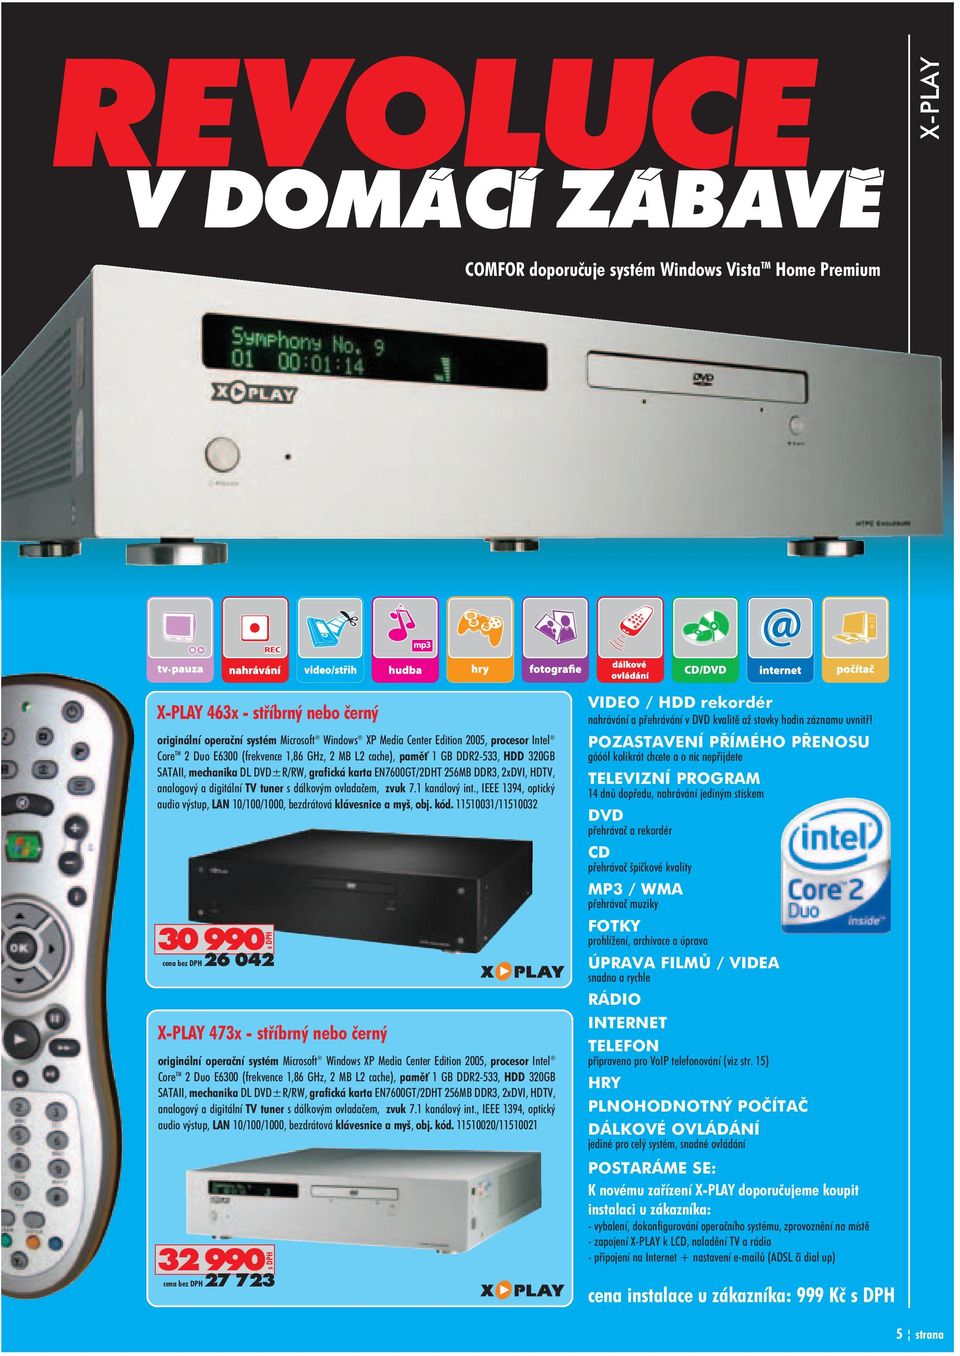 digitální TV tuner s dálkovým ovladaèem, zvuk 7.1 kanálový int., IEEE 1394, optický audio výstup, LAN 10/100/1000, bezdrátová klávesnice a myš, obj. kód.